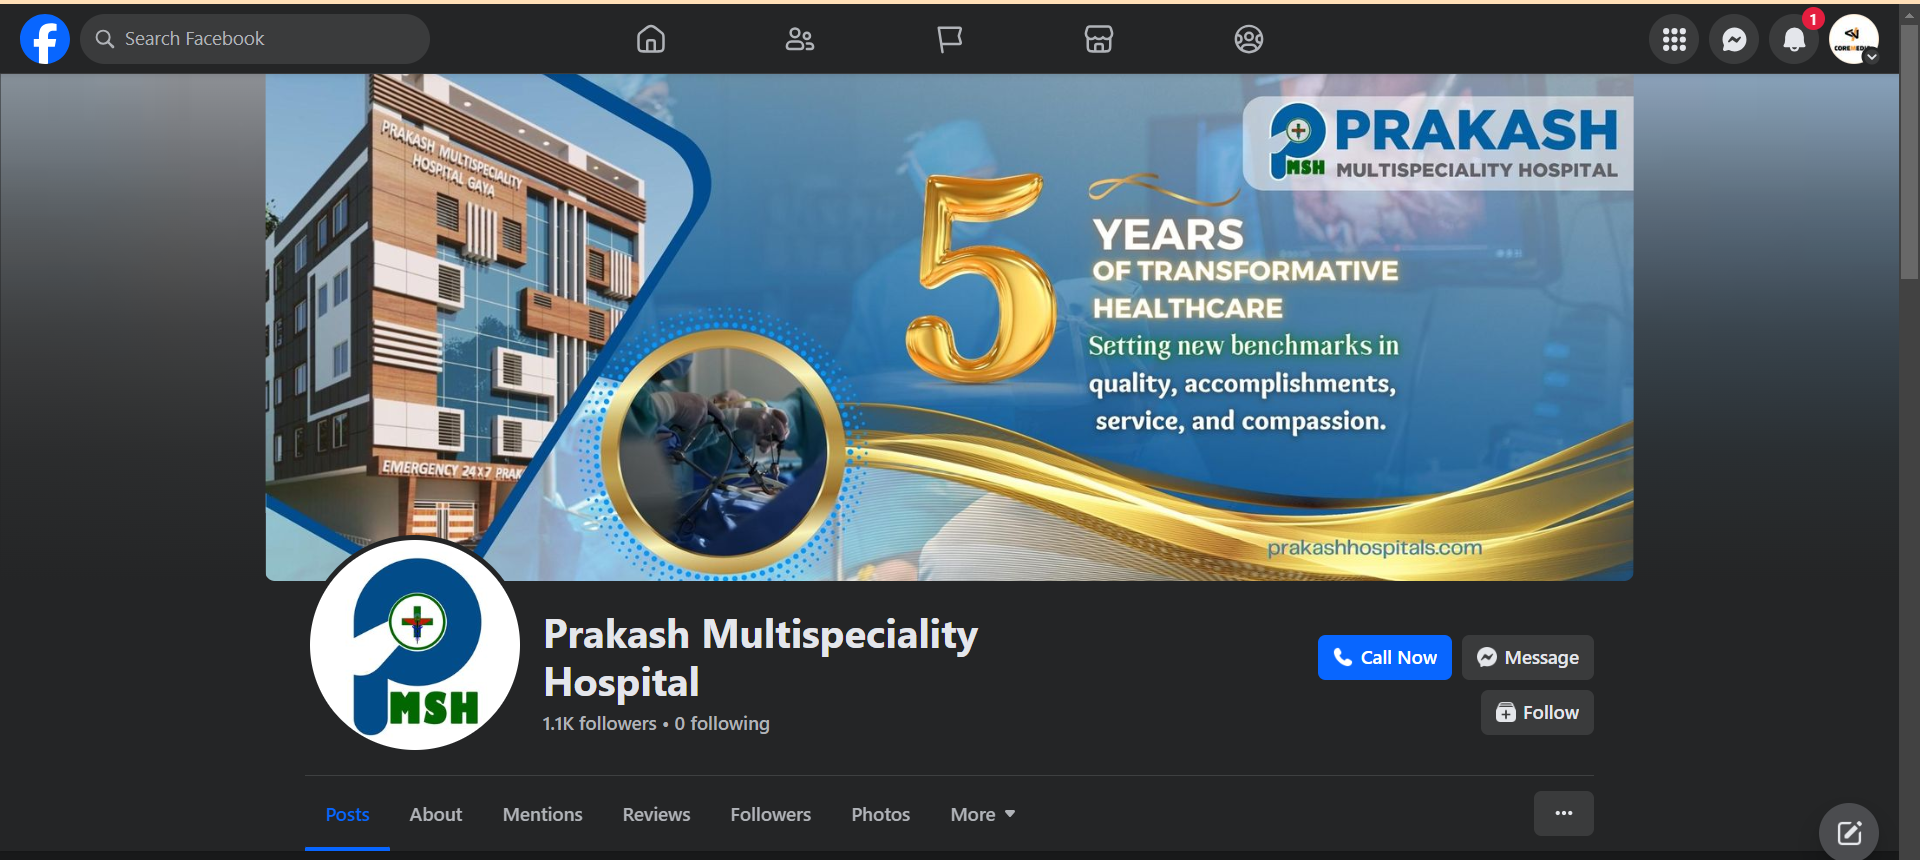 Prakash Multispeciality Hospital